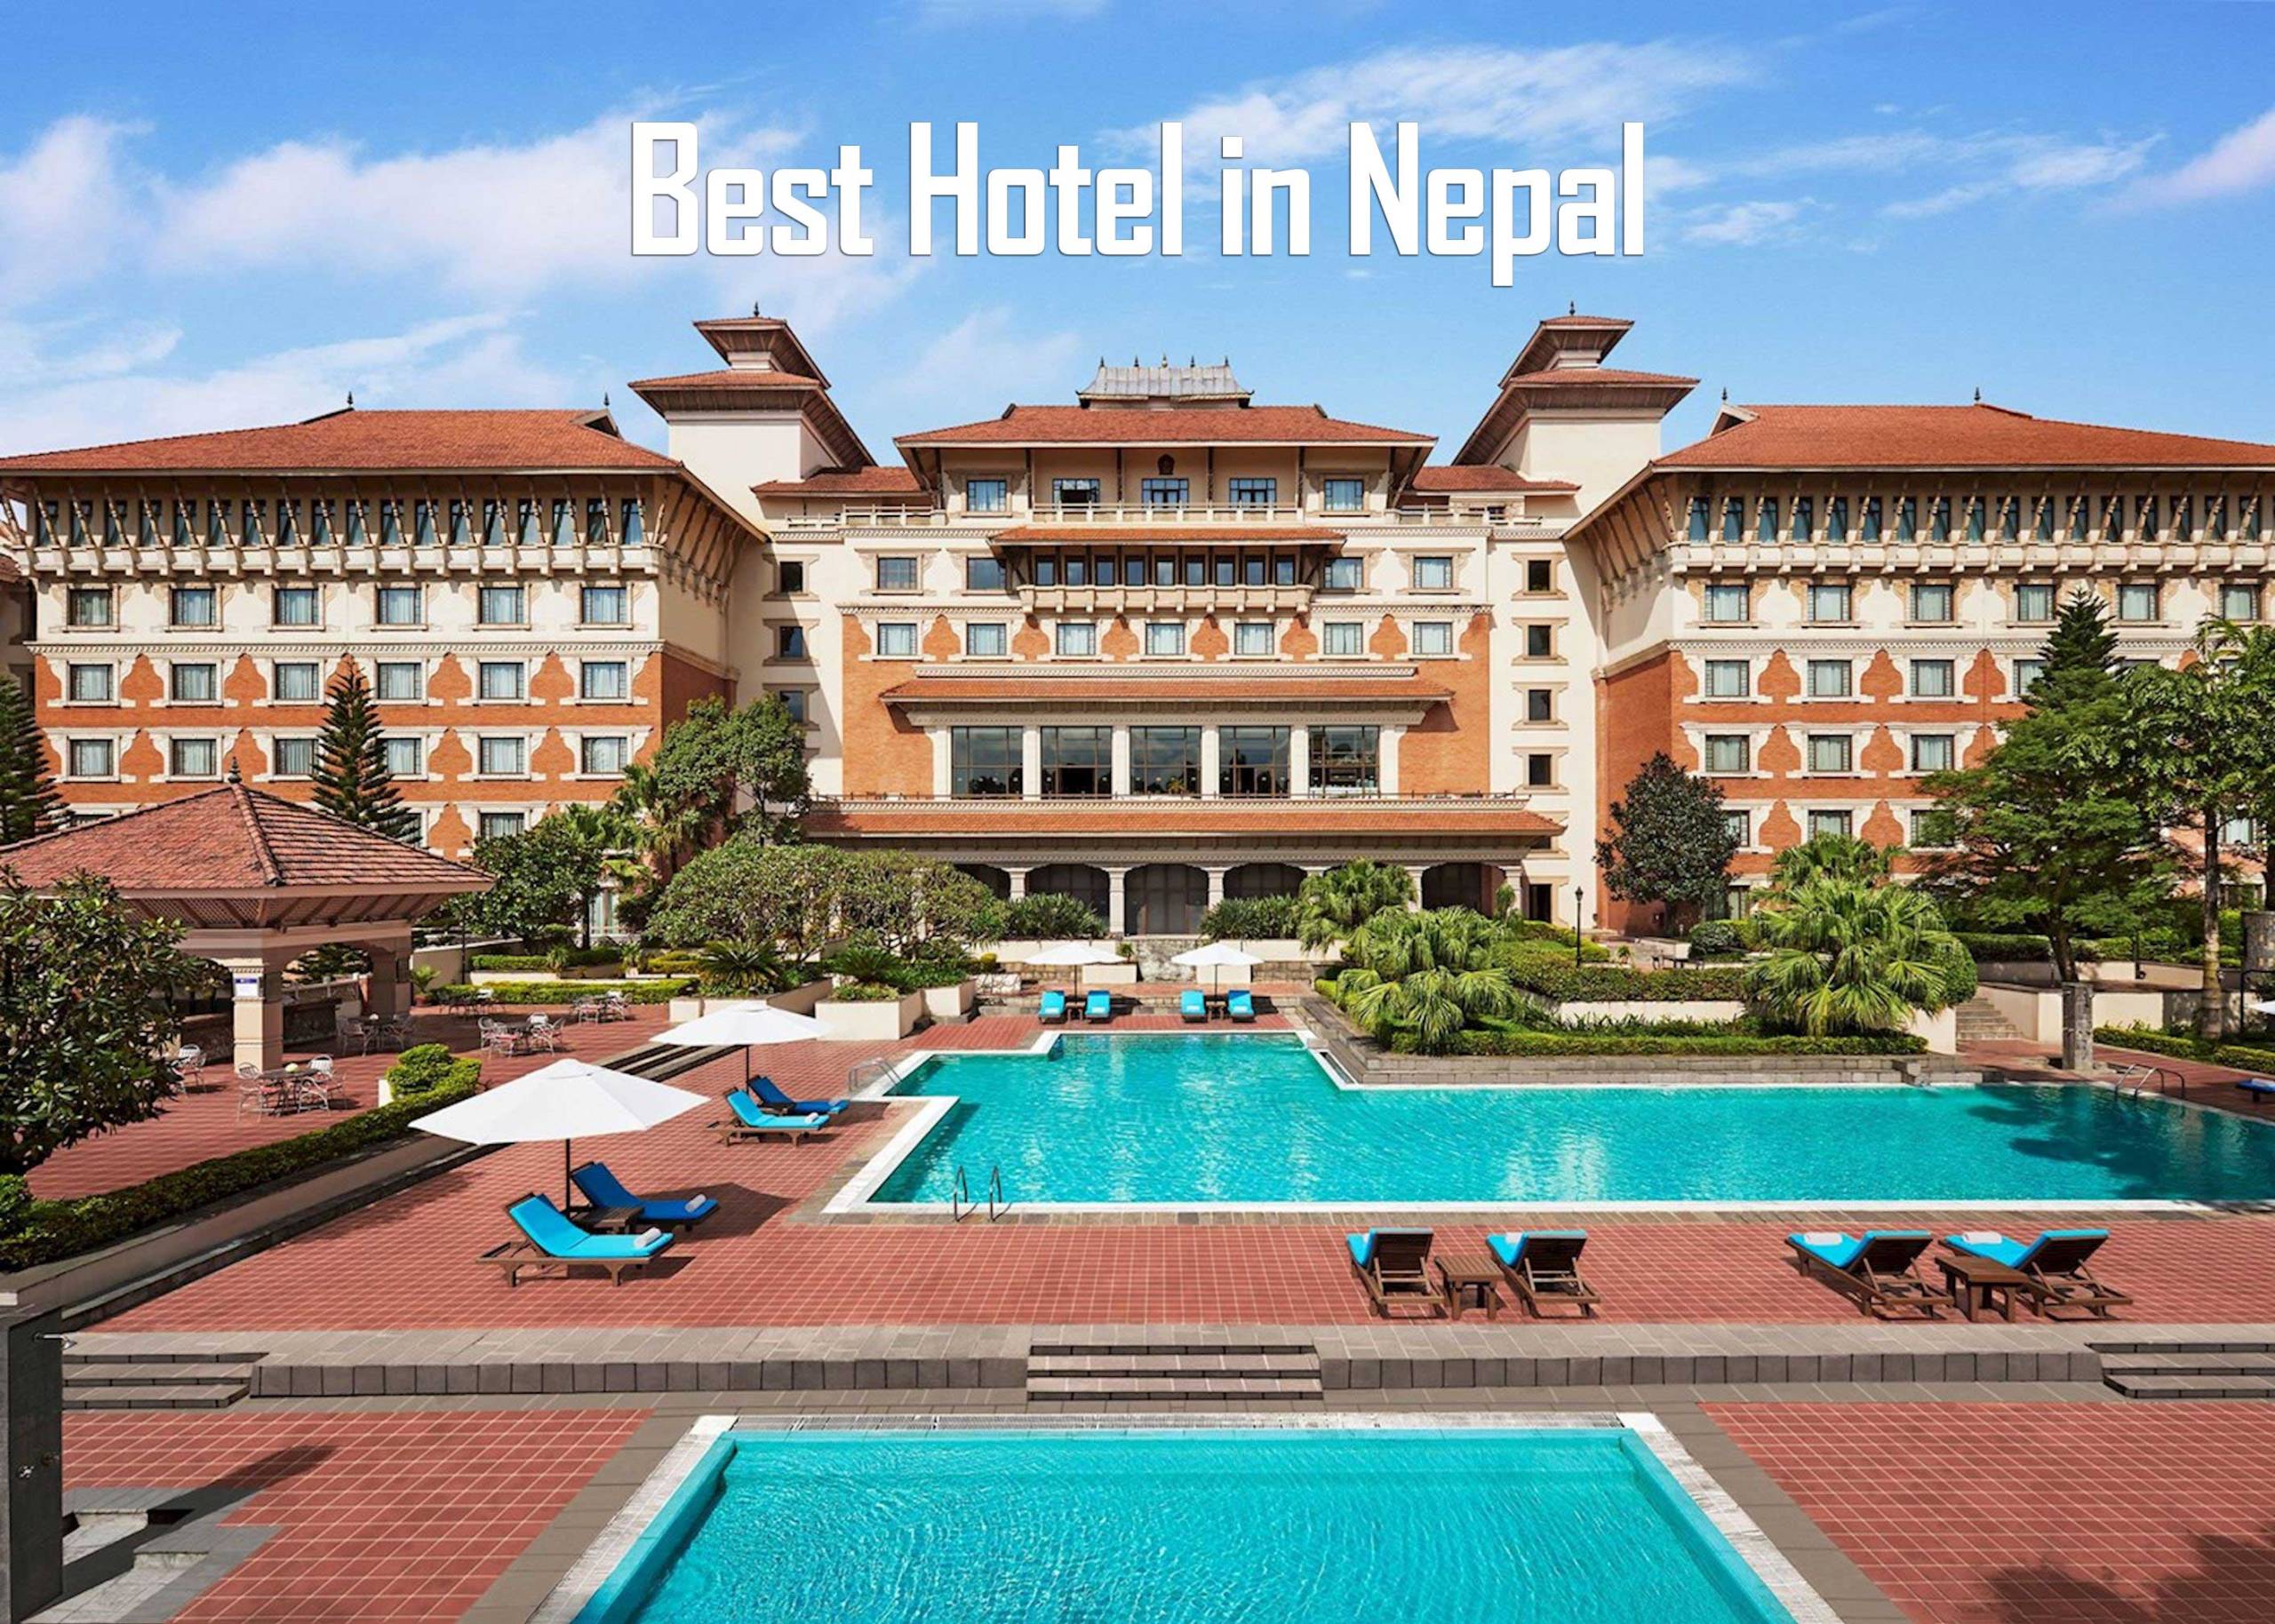 Top 10 Best Hotels in Nepal